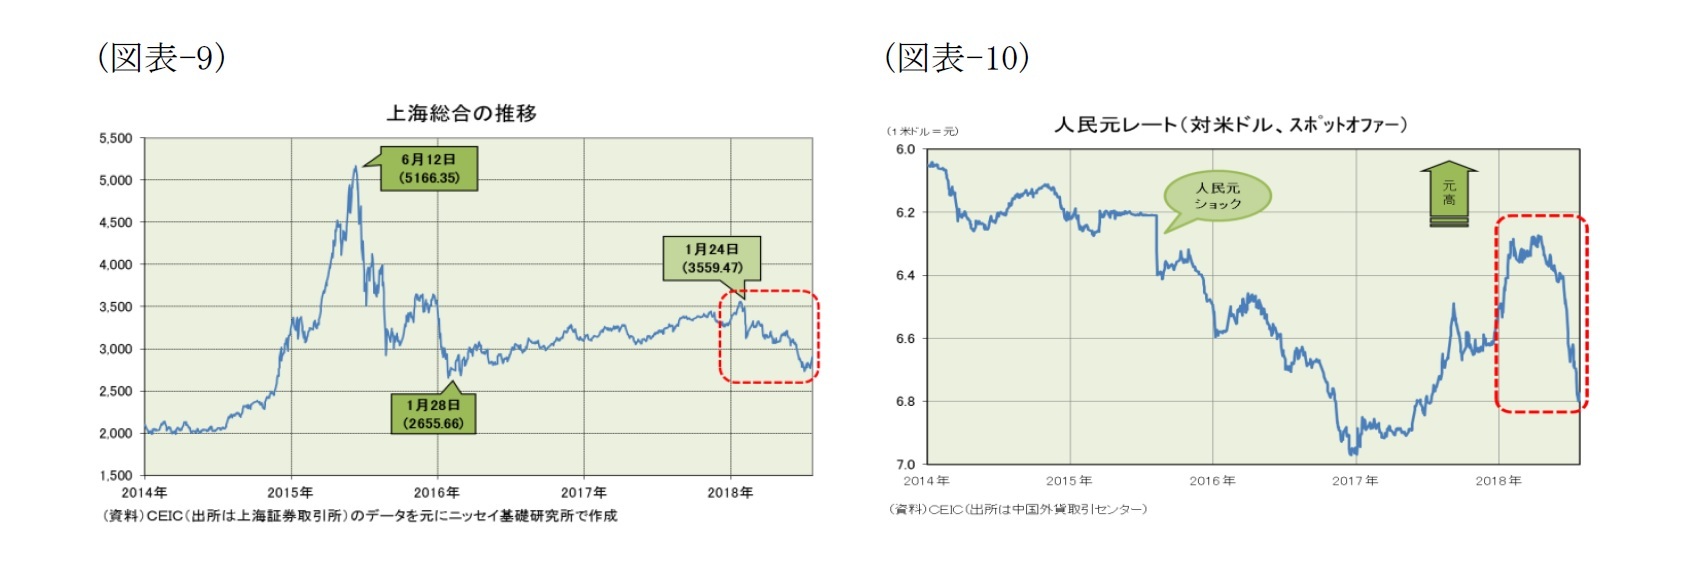 （図表-9）上海総合の推移/（図表-10）人民元レート(対米ドル、スポットオファー)